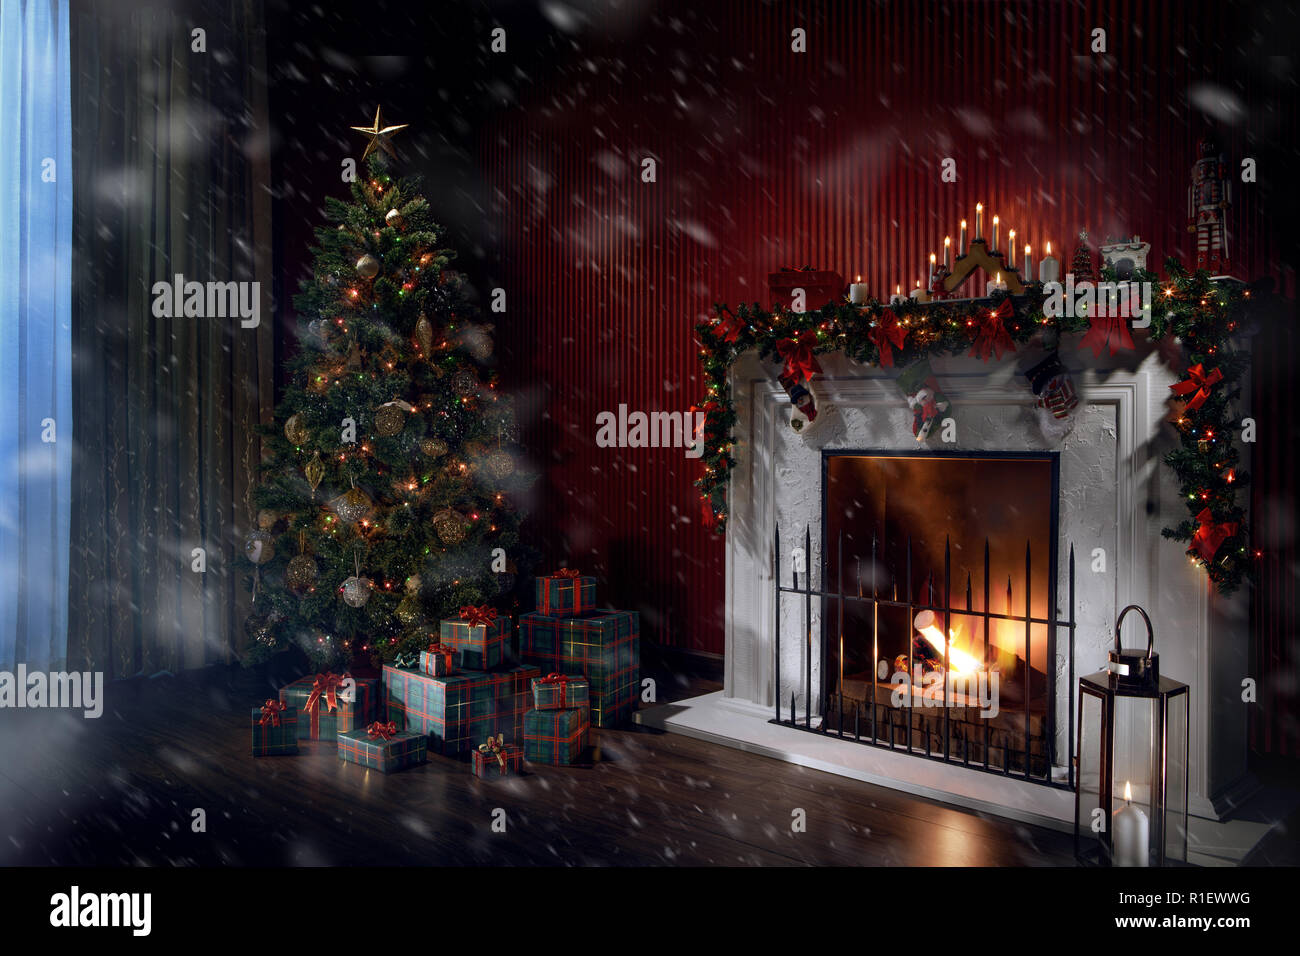 Lửa Noel: Lửa Noel đại diện cho tình yêu thương, sự ấm áp và niềm hy vọng. Xem hình ảnh về lửa Noel sẽ giúp bạn nhớ lại khoảnh khắc đóng đinh nồi lên lửa cùng gia đình và tận hưởng hơi ấm đặc biệt của mùa đông.